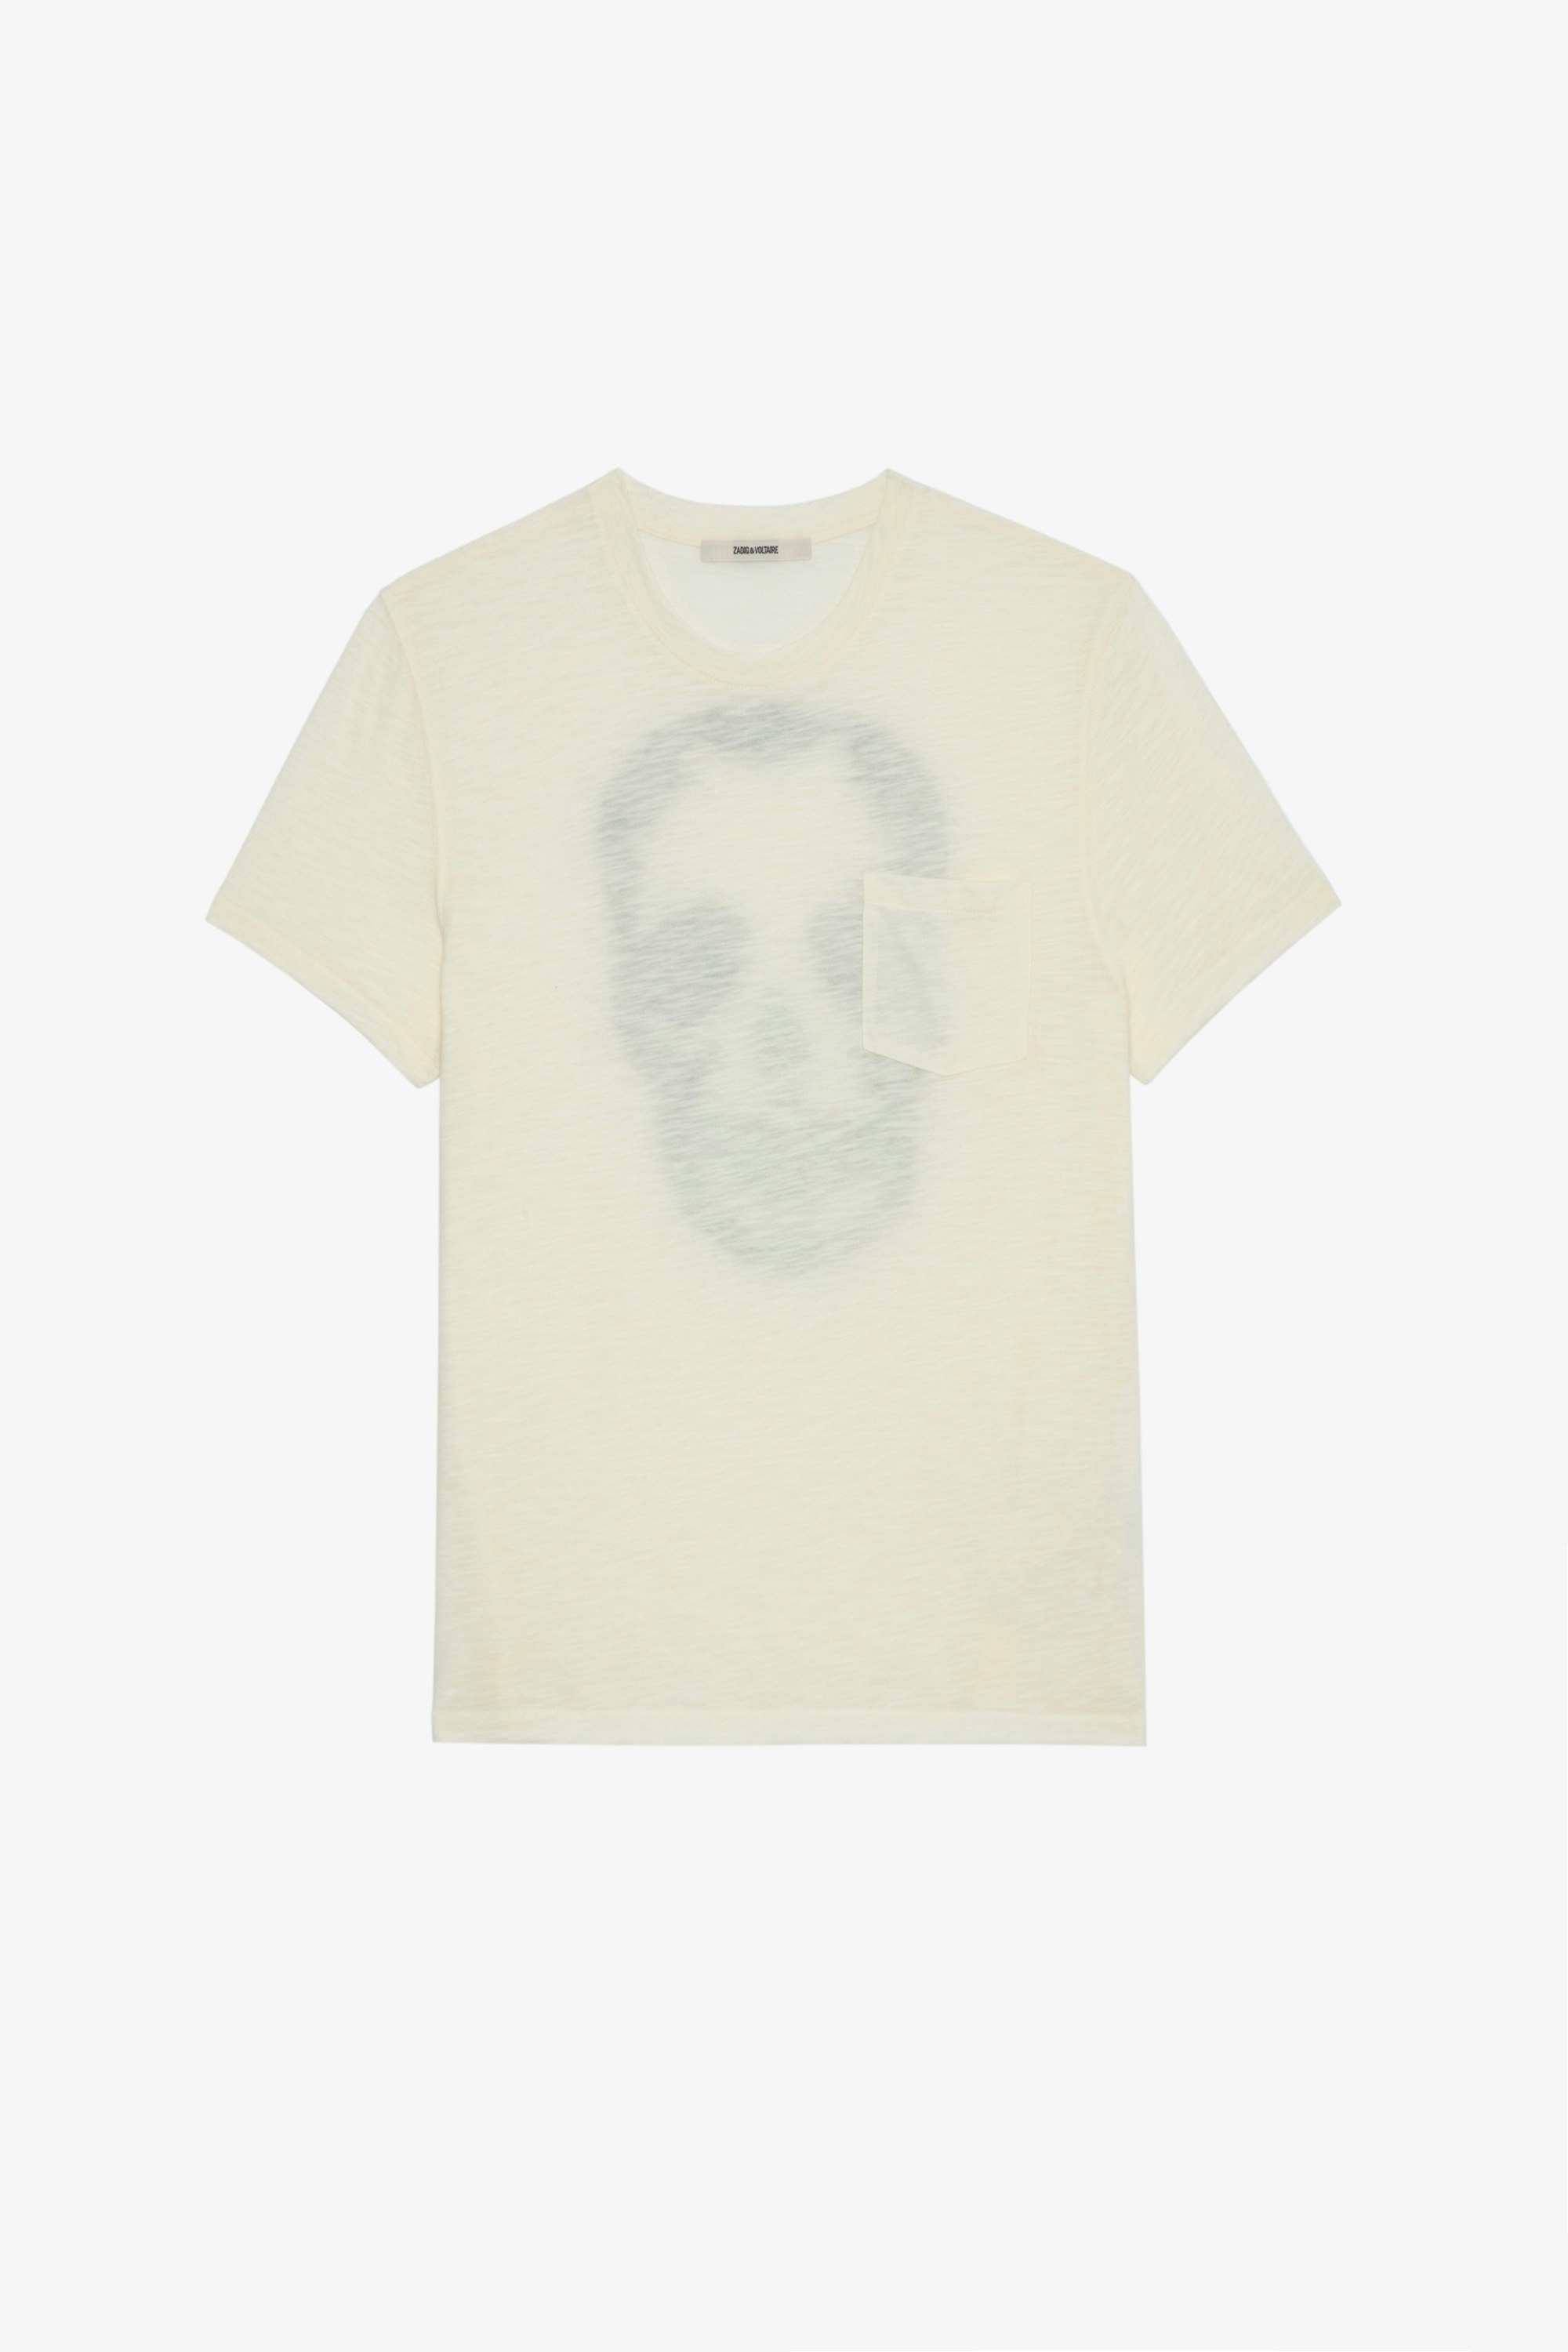 Camiseta Stockholm Flamme Camiseta de hombre de algodón jaspeado crudo adornada con una calavera en la espalda